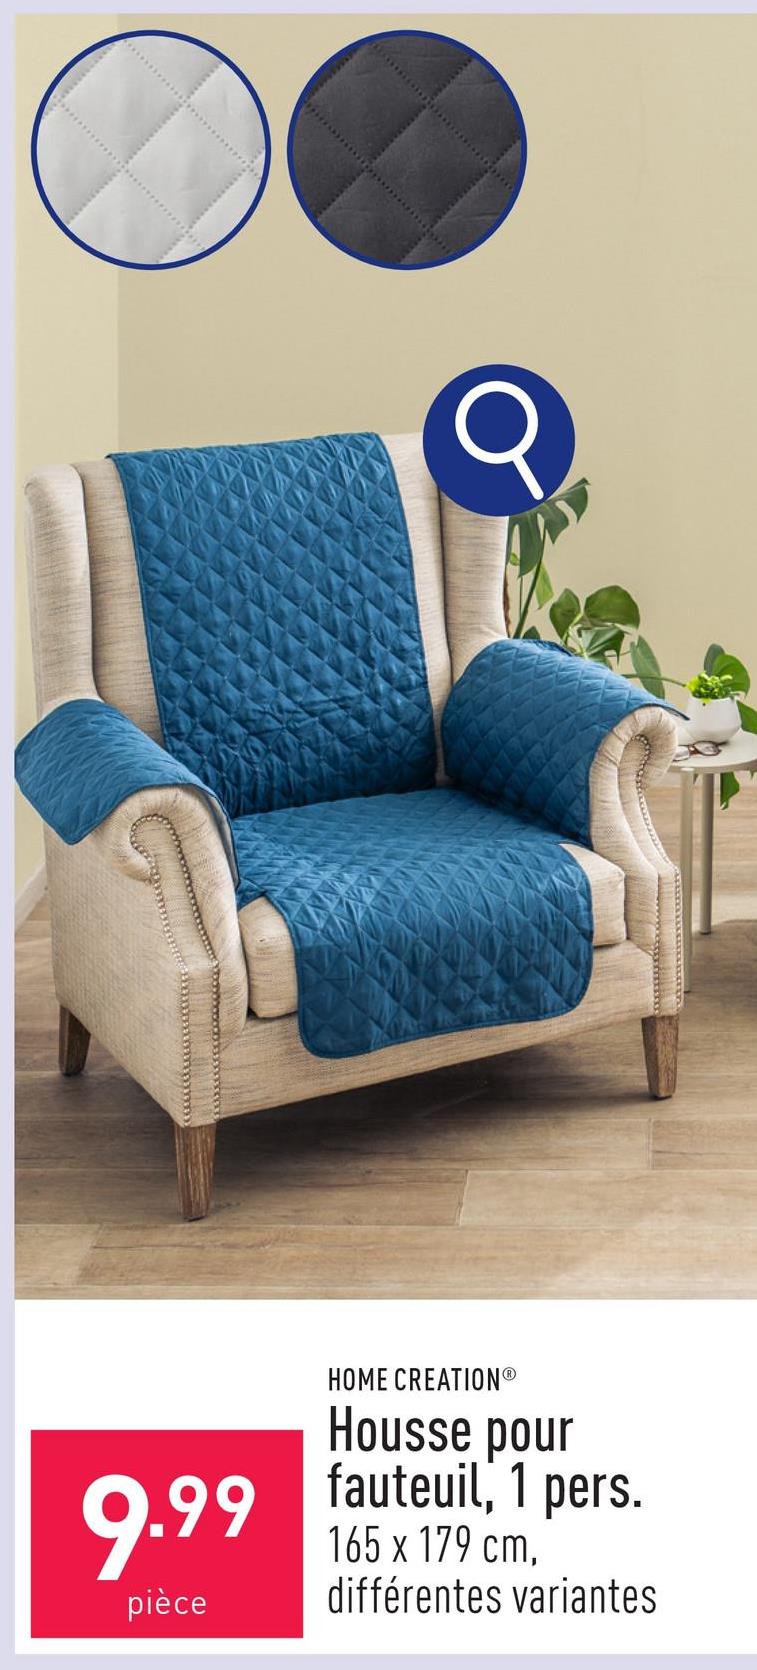 Housse pour fauteuil, 1 pers. dessus et rembourrage en polyester, dessous en polypropylène, env. 165 x 179 cm, choix entre différentes variantes, certifiée OEKO-TEX®